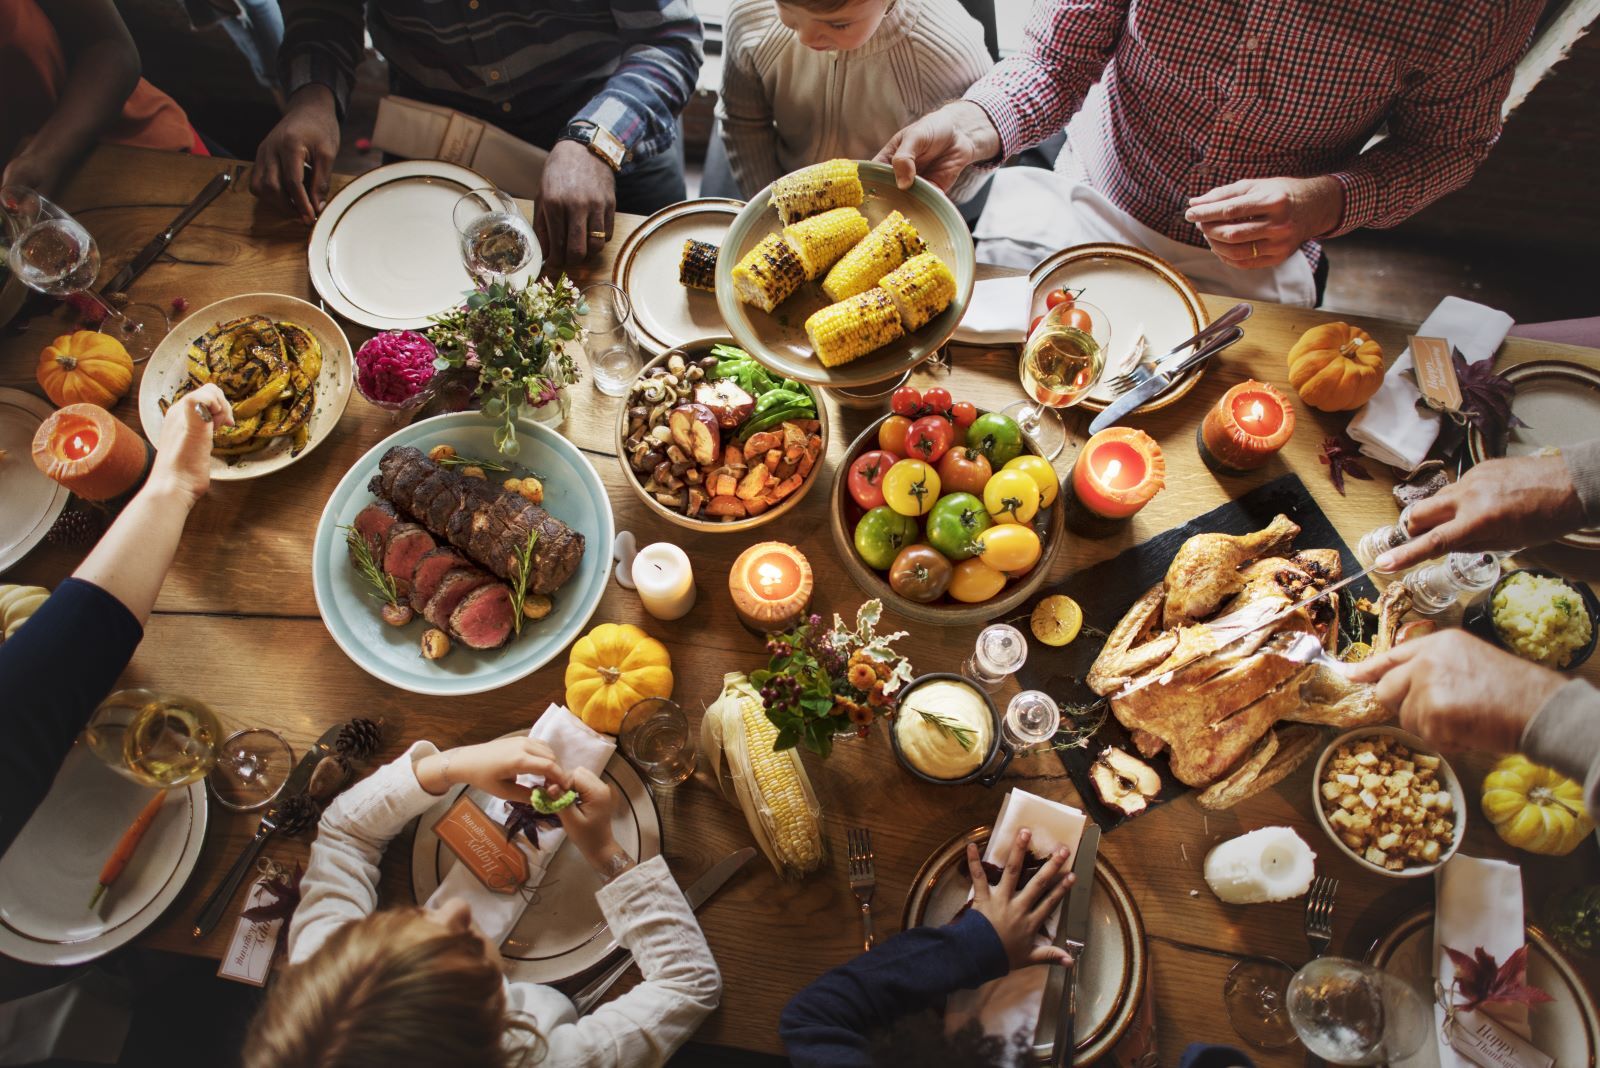 family enjoying Thanksgiving dinner